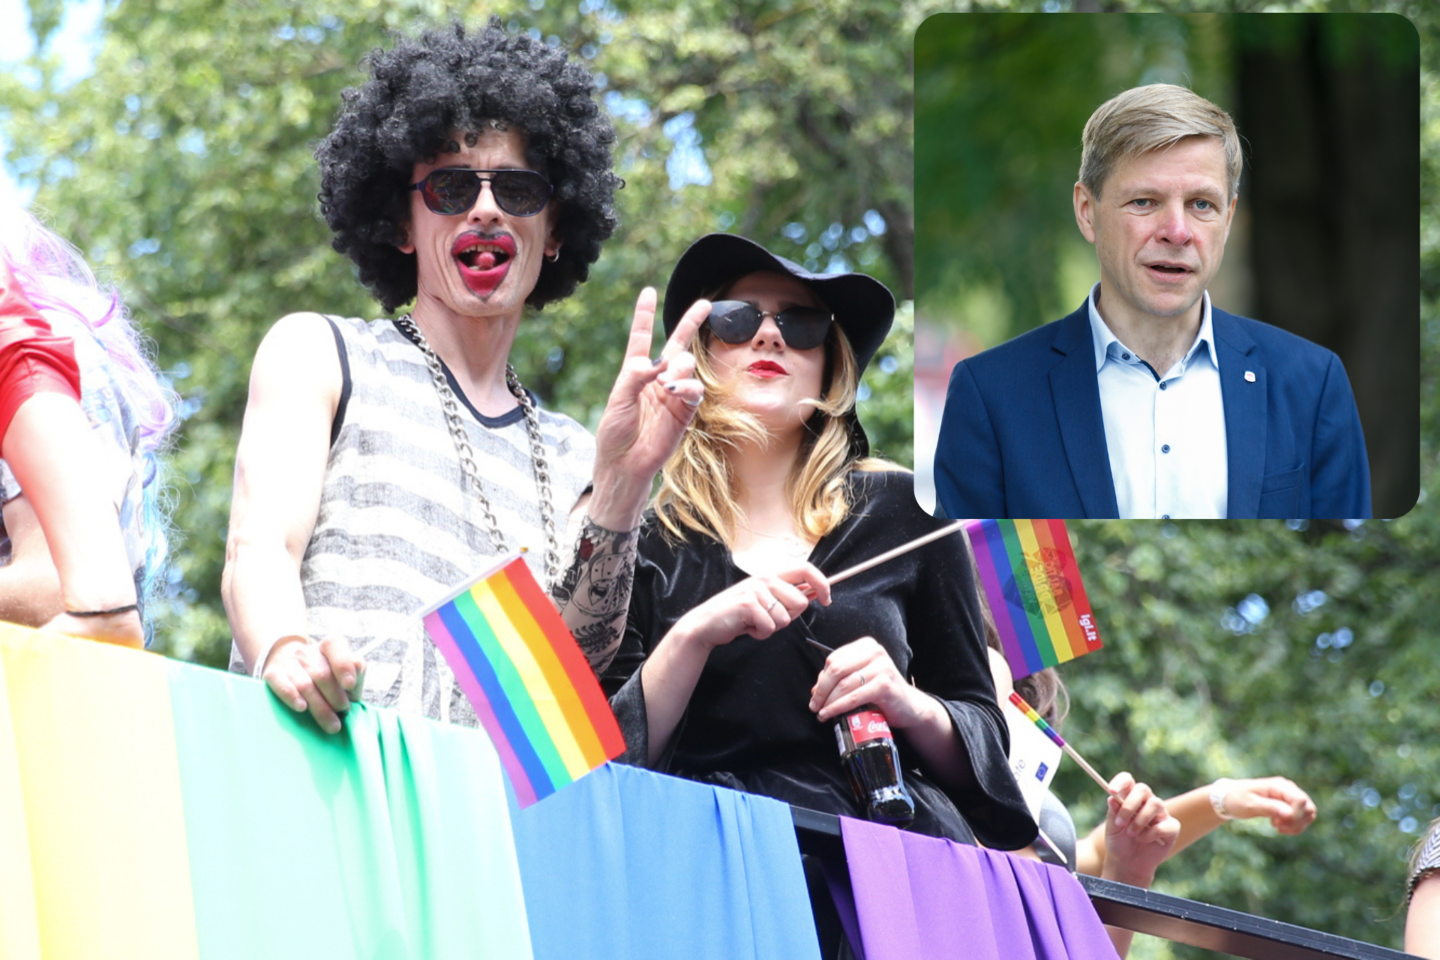  Vilniaus meras R.Šimašius trumpa vaizdo žinute kviečia LGBTIQ žmones ir jų šalininkus į dvyliktąjį „Baltic Pride“ festivalį birželio 1–5 dienomis kartu švęsti įvairovę ir įtrauktį. <br> lrytas.lt montažas.